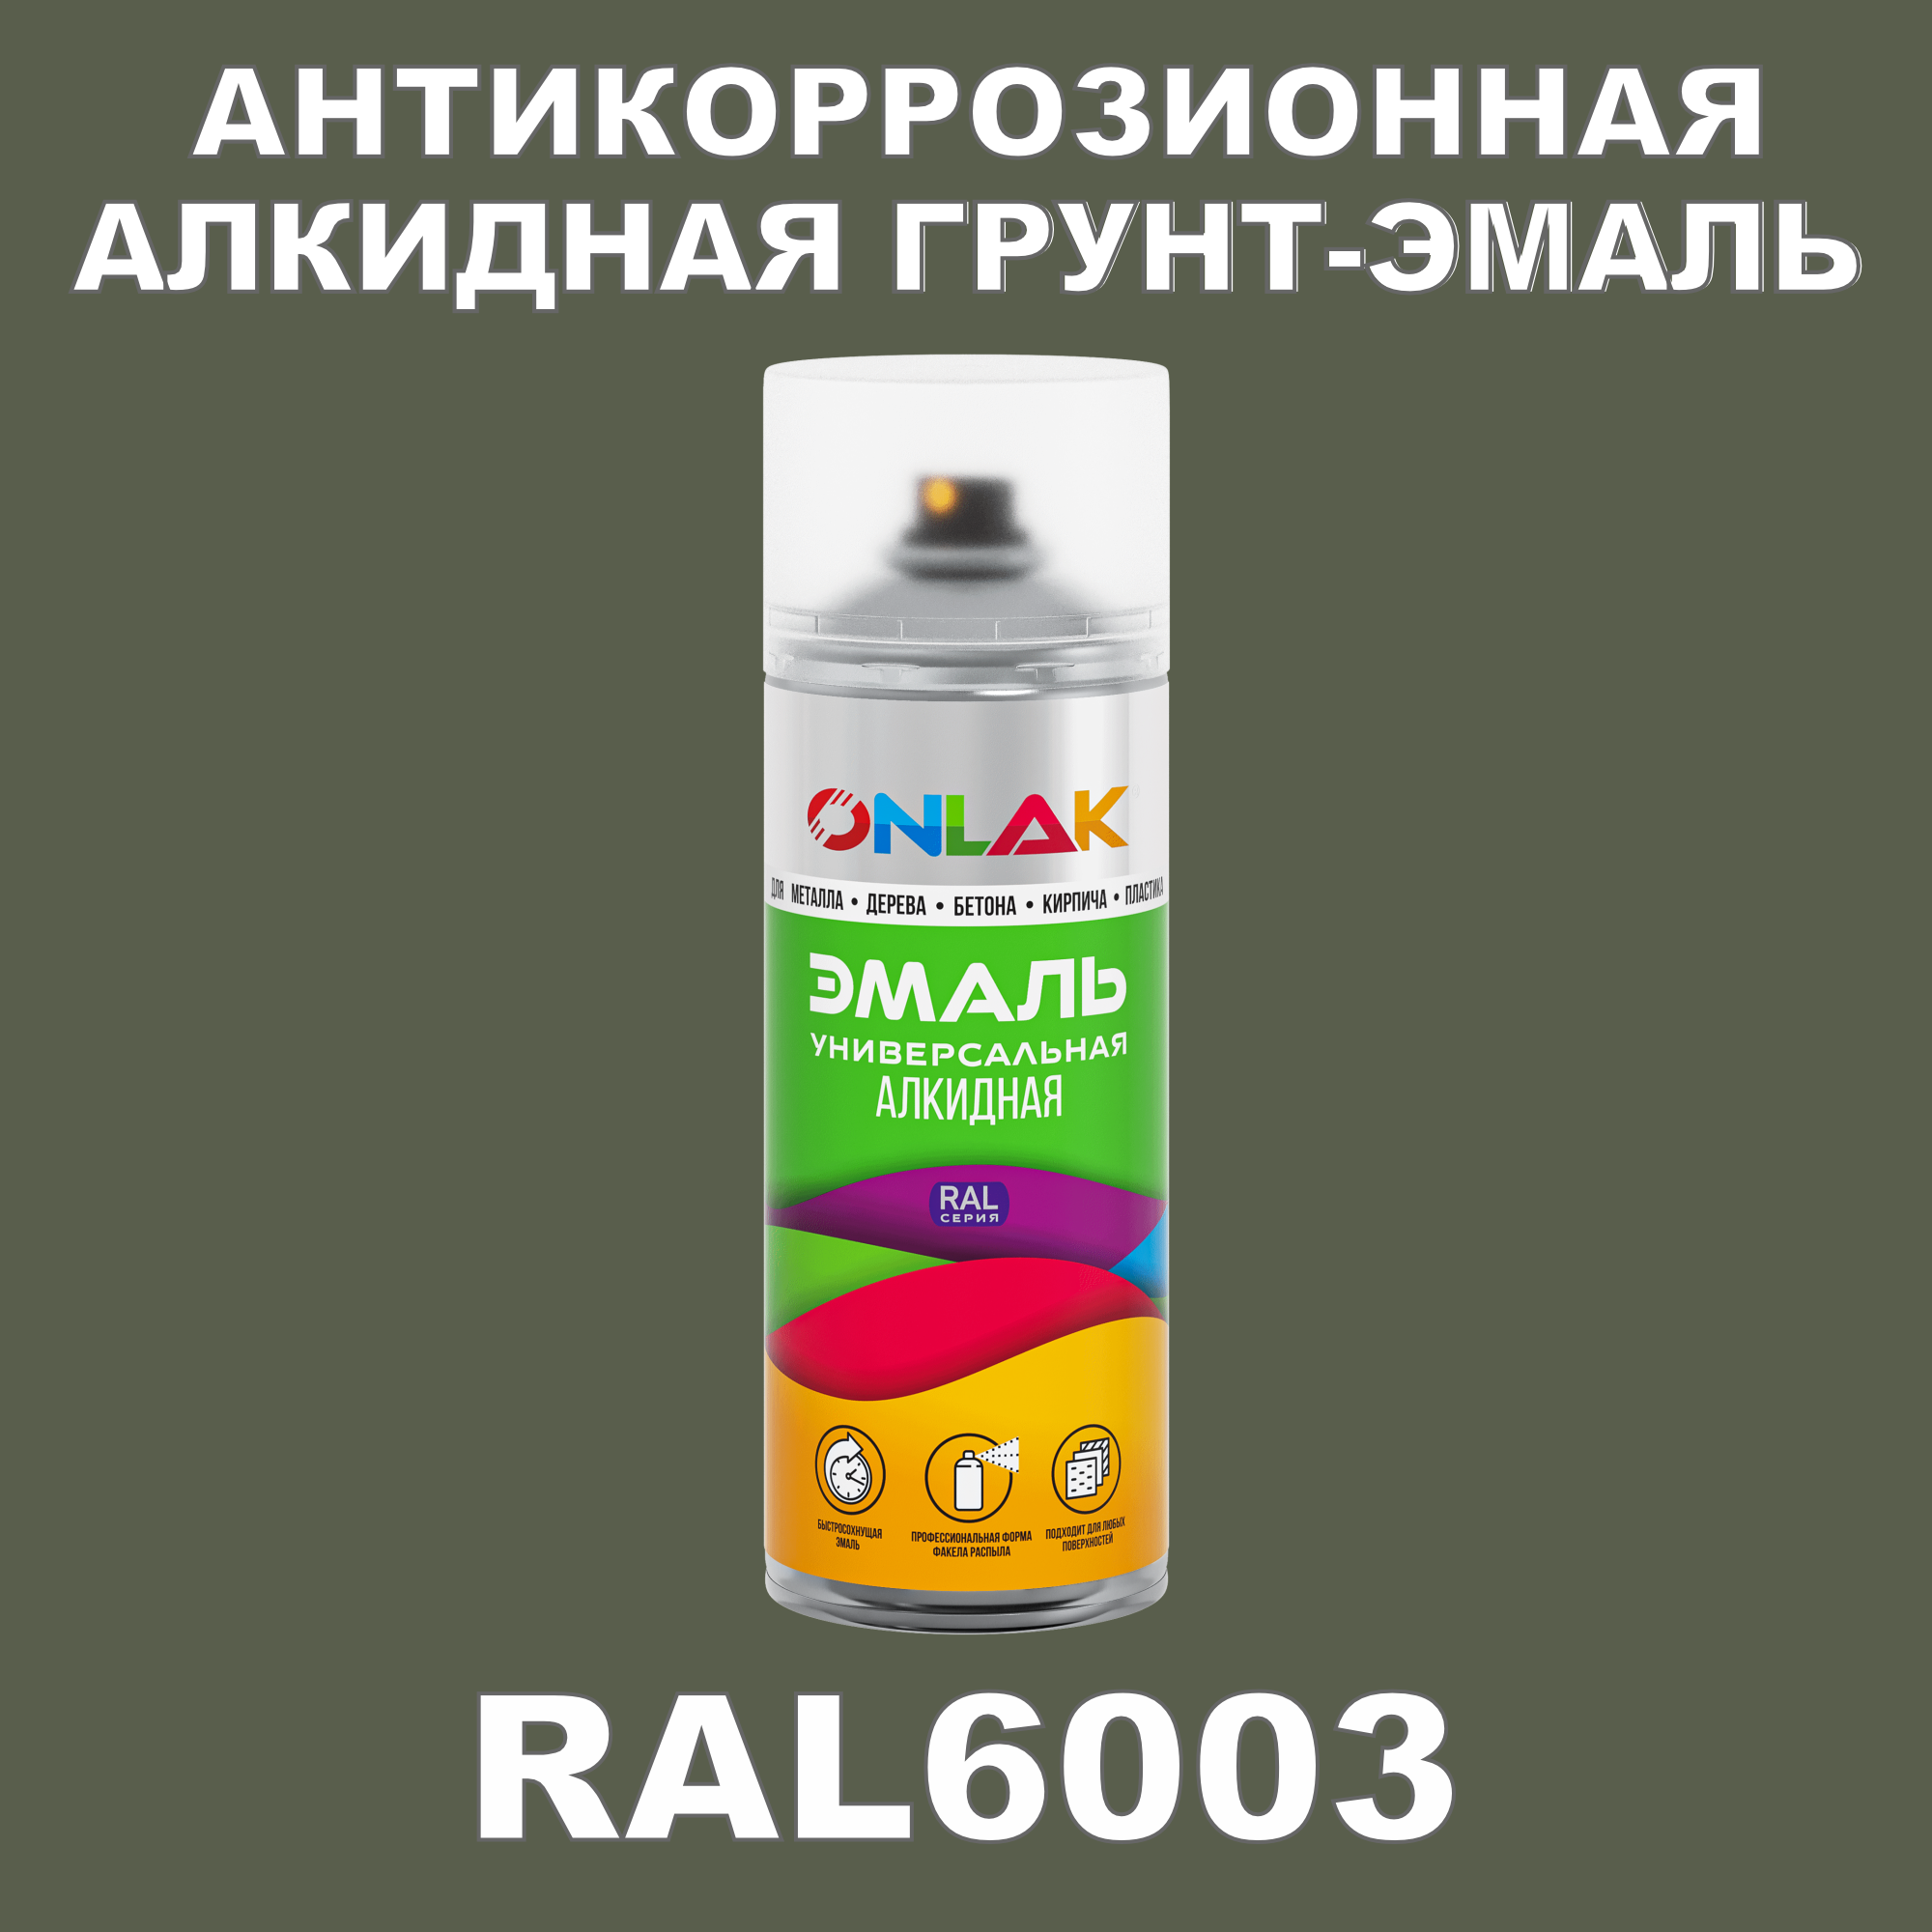 Антикоррозионная грунт-эмаль ONLAK RAL6003 полуматовая для металла и защиты от ржавчины грунт эмаль по ржавчине 3в1 picante triomix полуматовая ral 1013 светло бежевая 2 5кг 10520 1013 gl